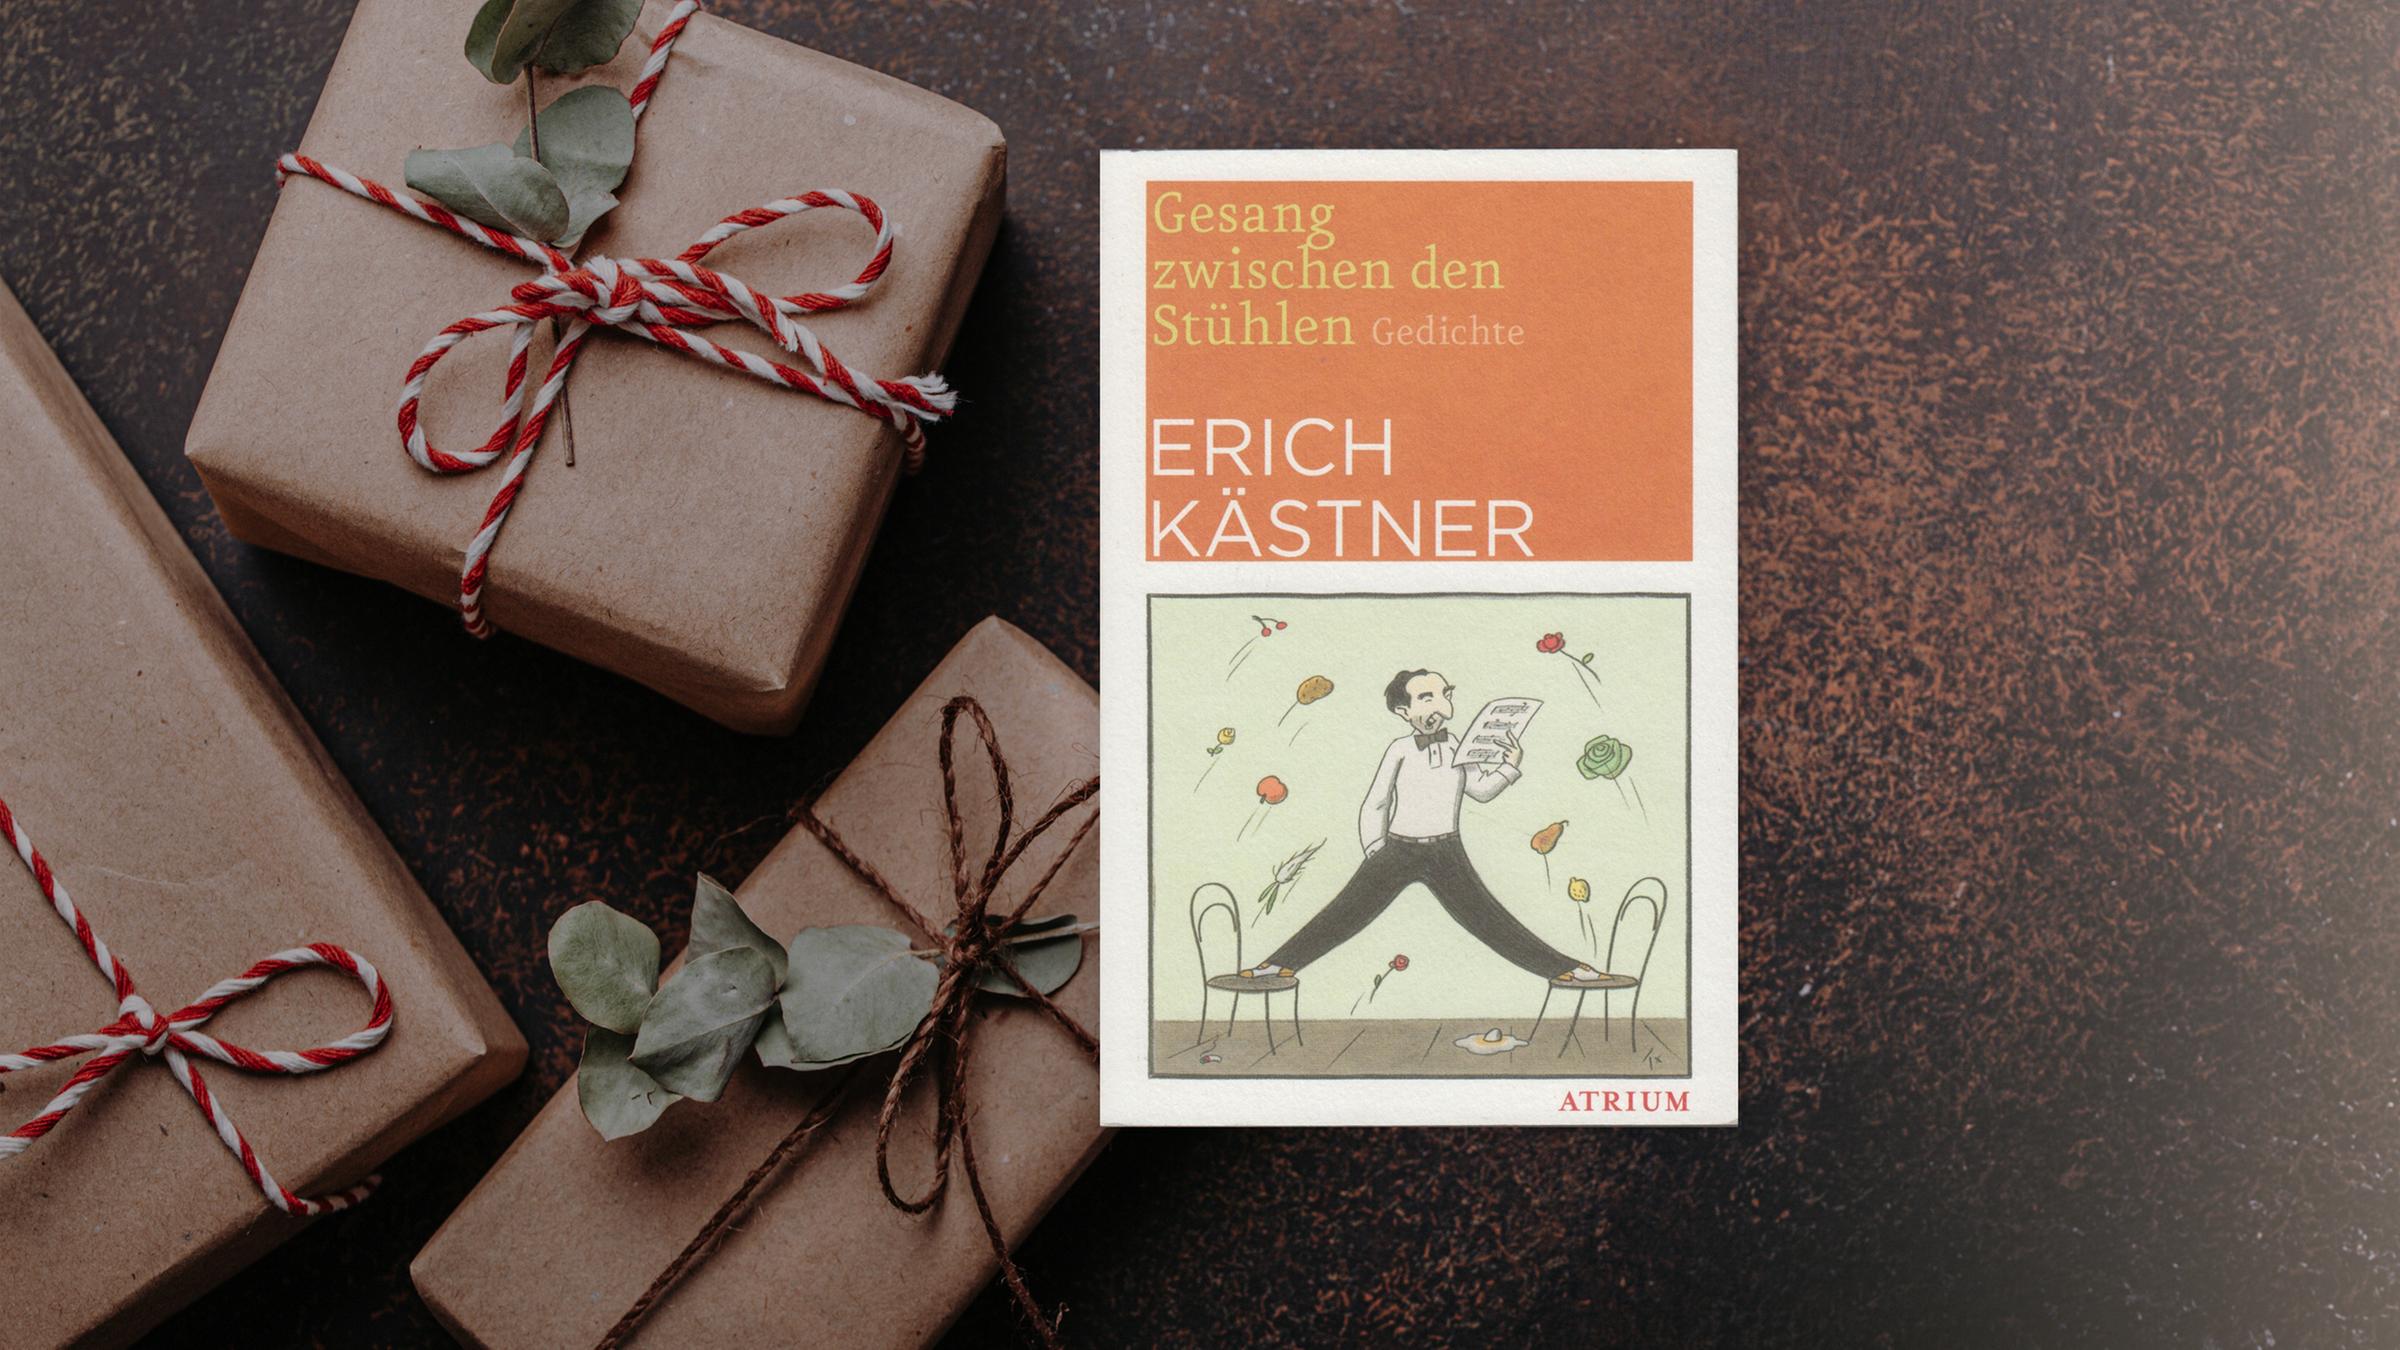 Buchcover von "Gesang zwischen den Stühlen" von Erich Kästner. Im Hintergrund sind braune Päckchen mit weiß-roten Schleifen zu sehen.